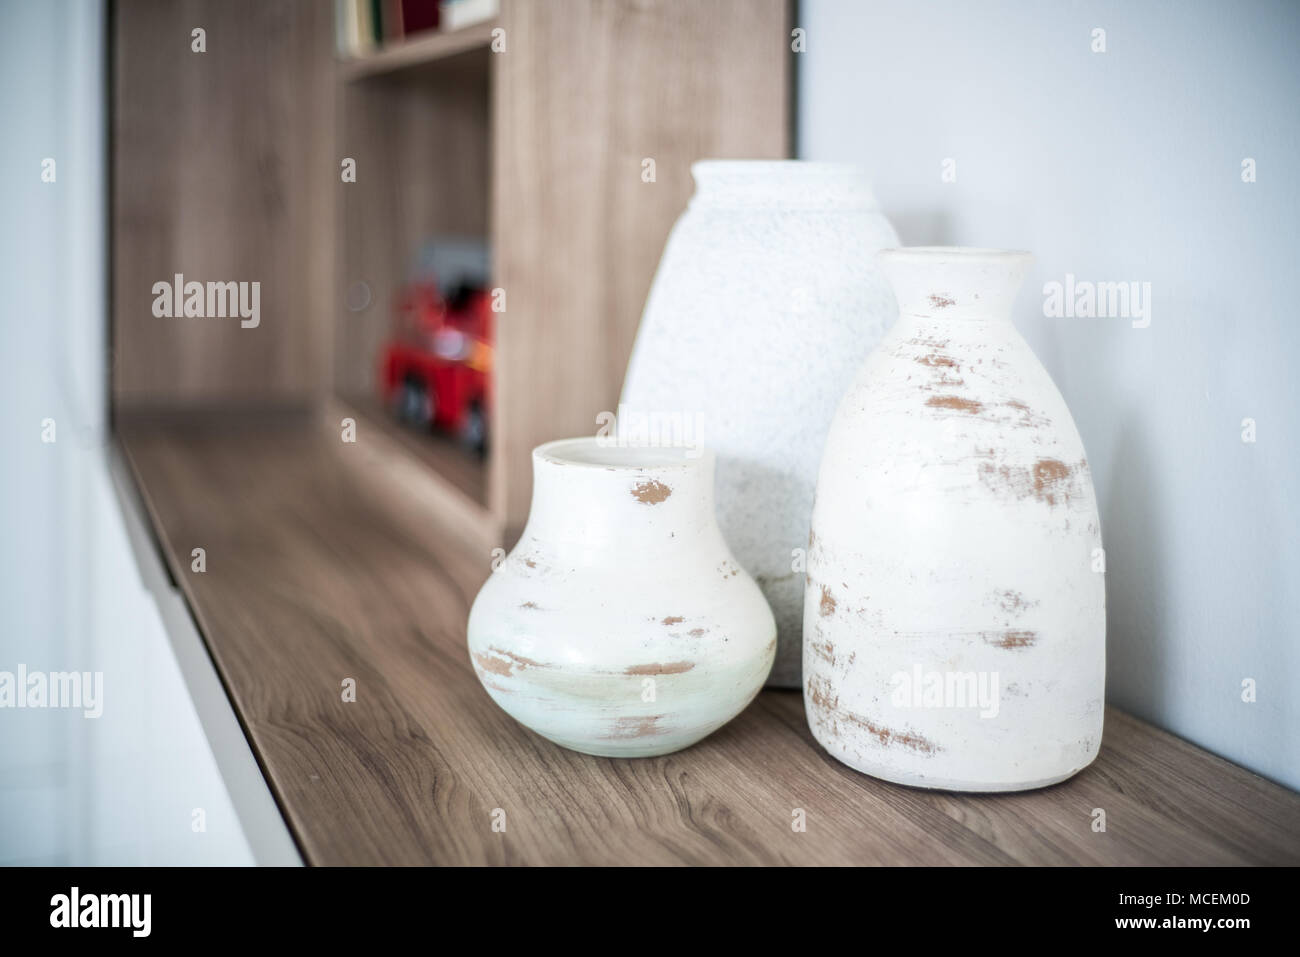 Close-up of vase on wooden shelf Stock Photo